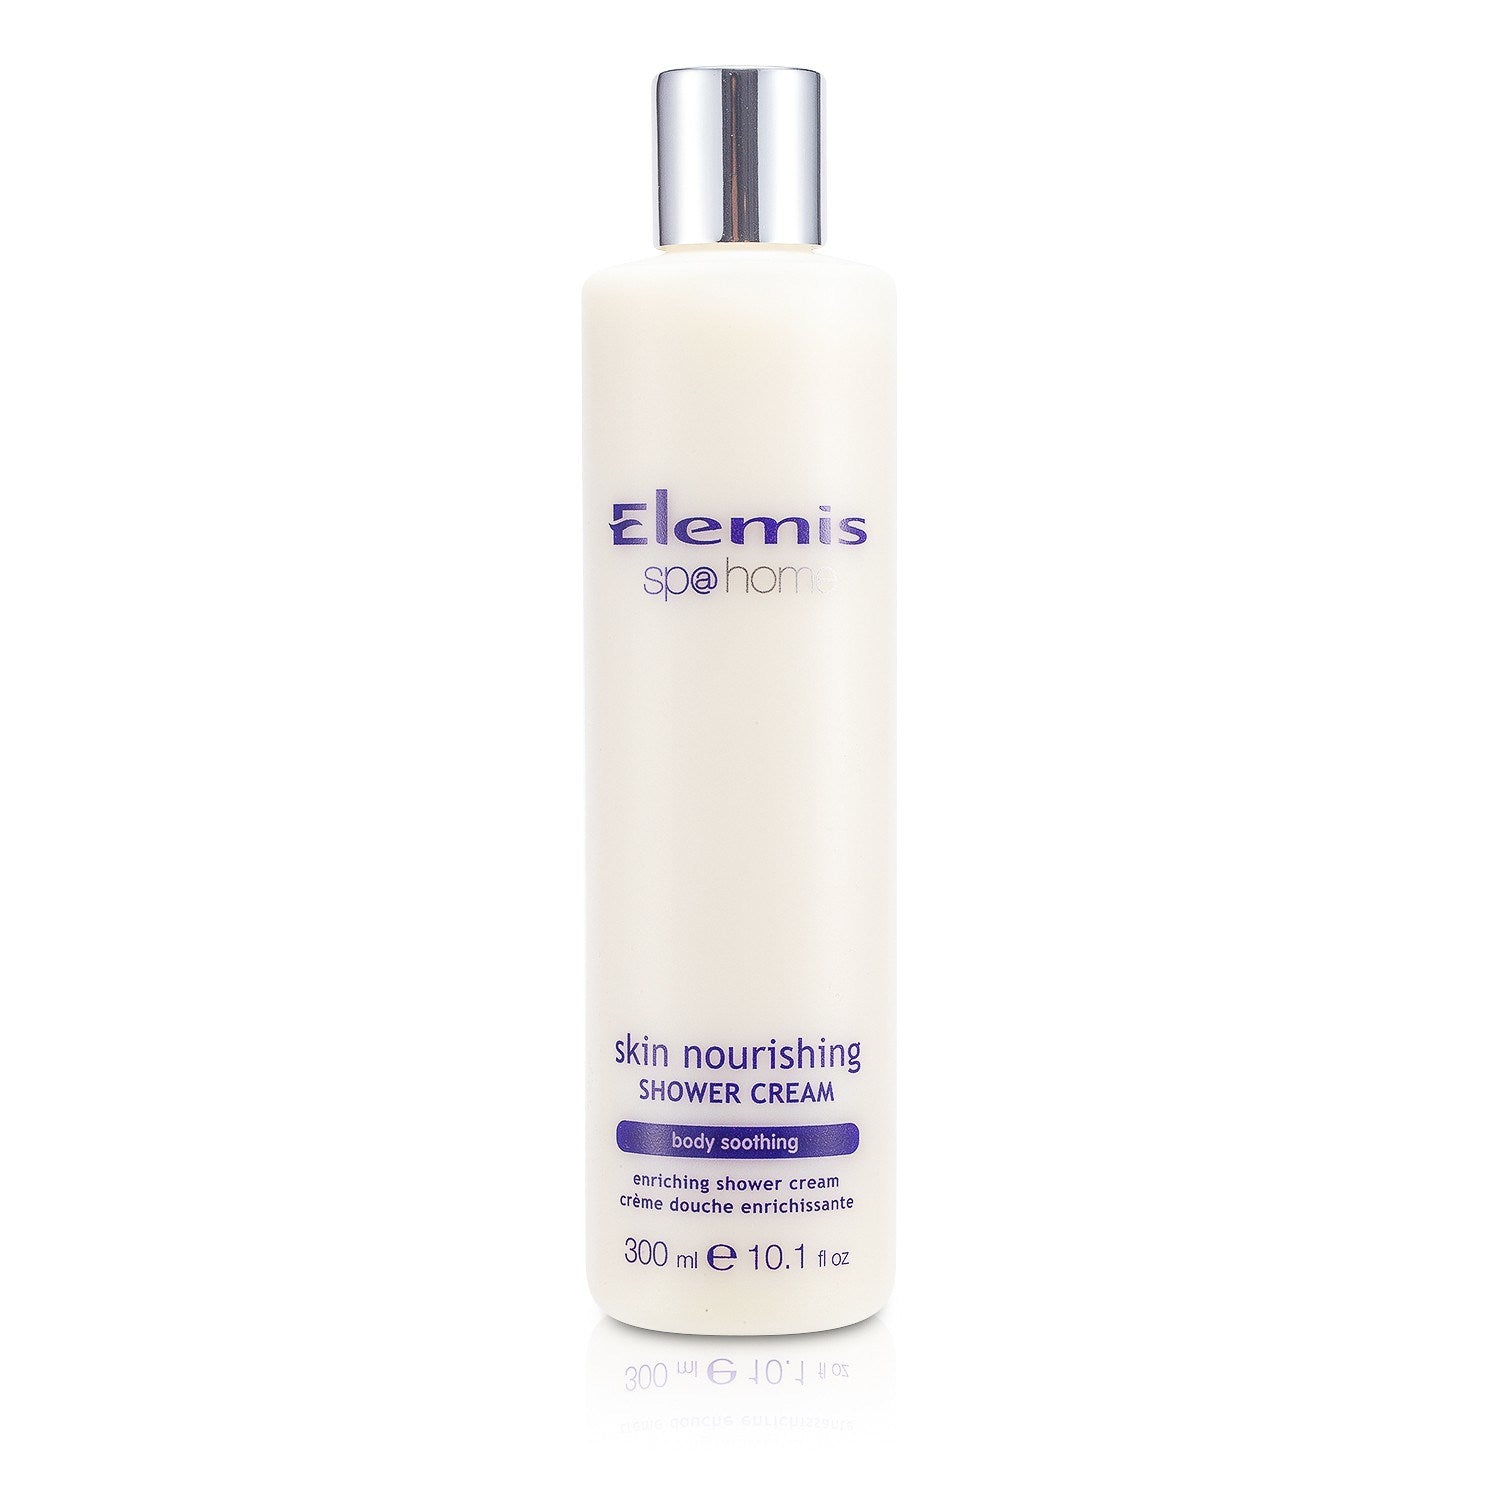 Elemis Skin Nourishing Shower Cream.